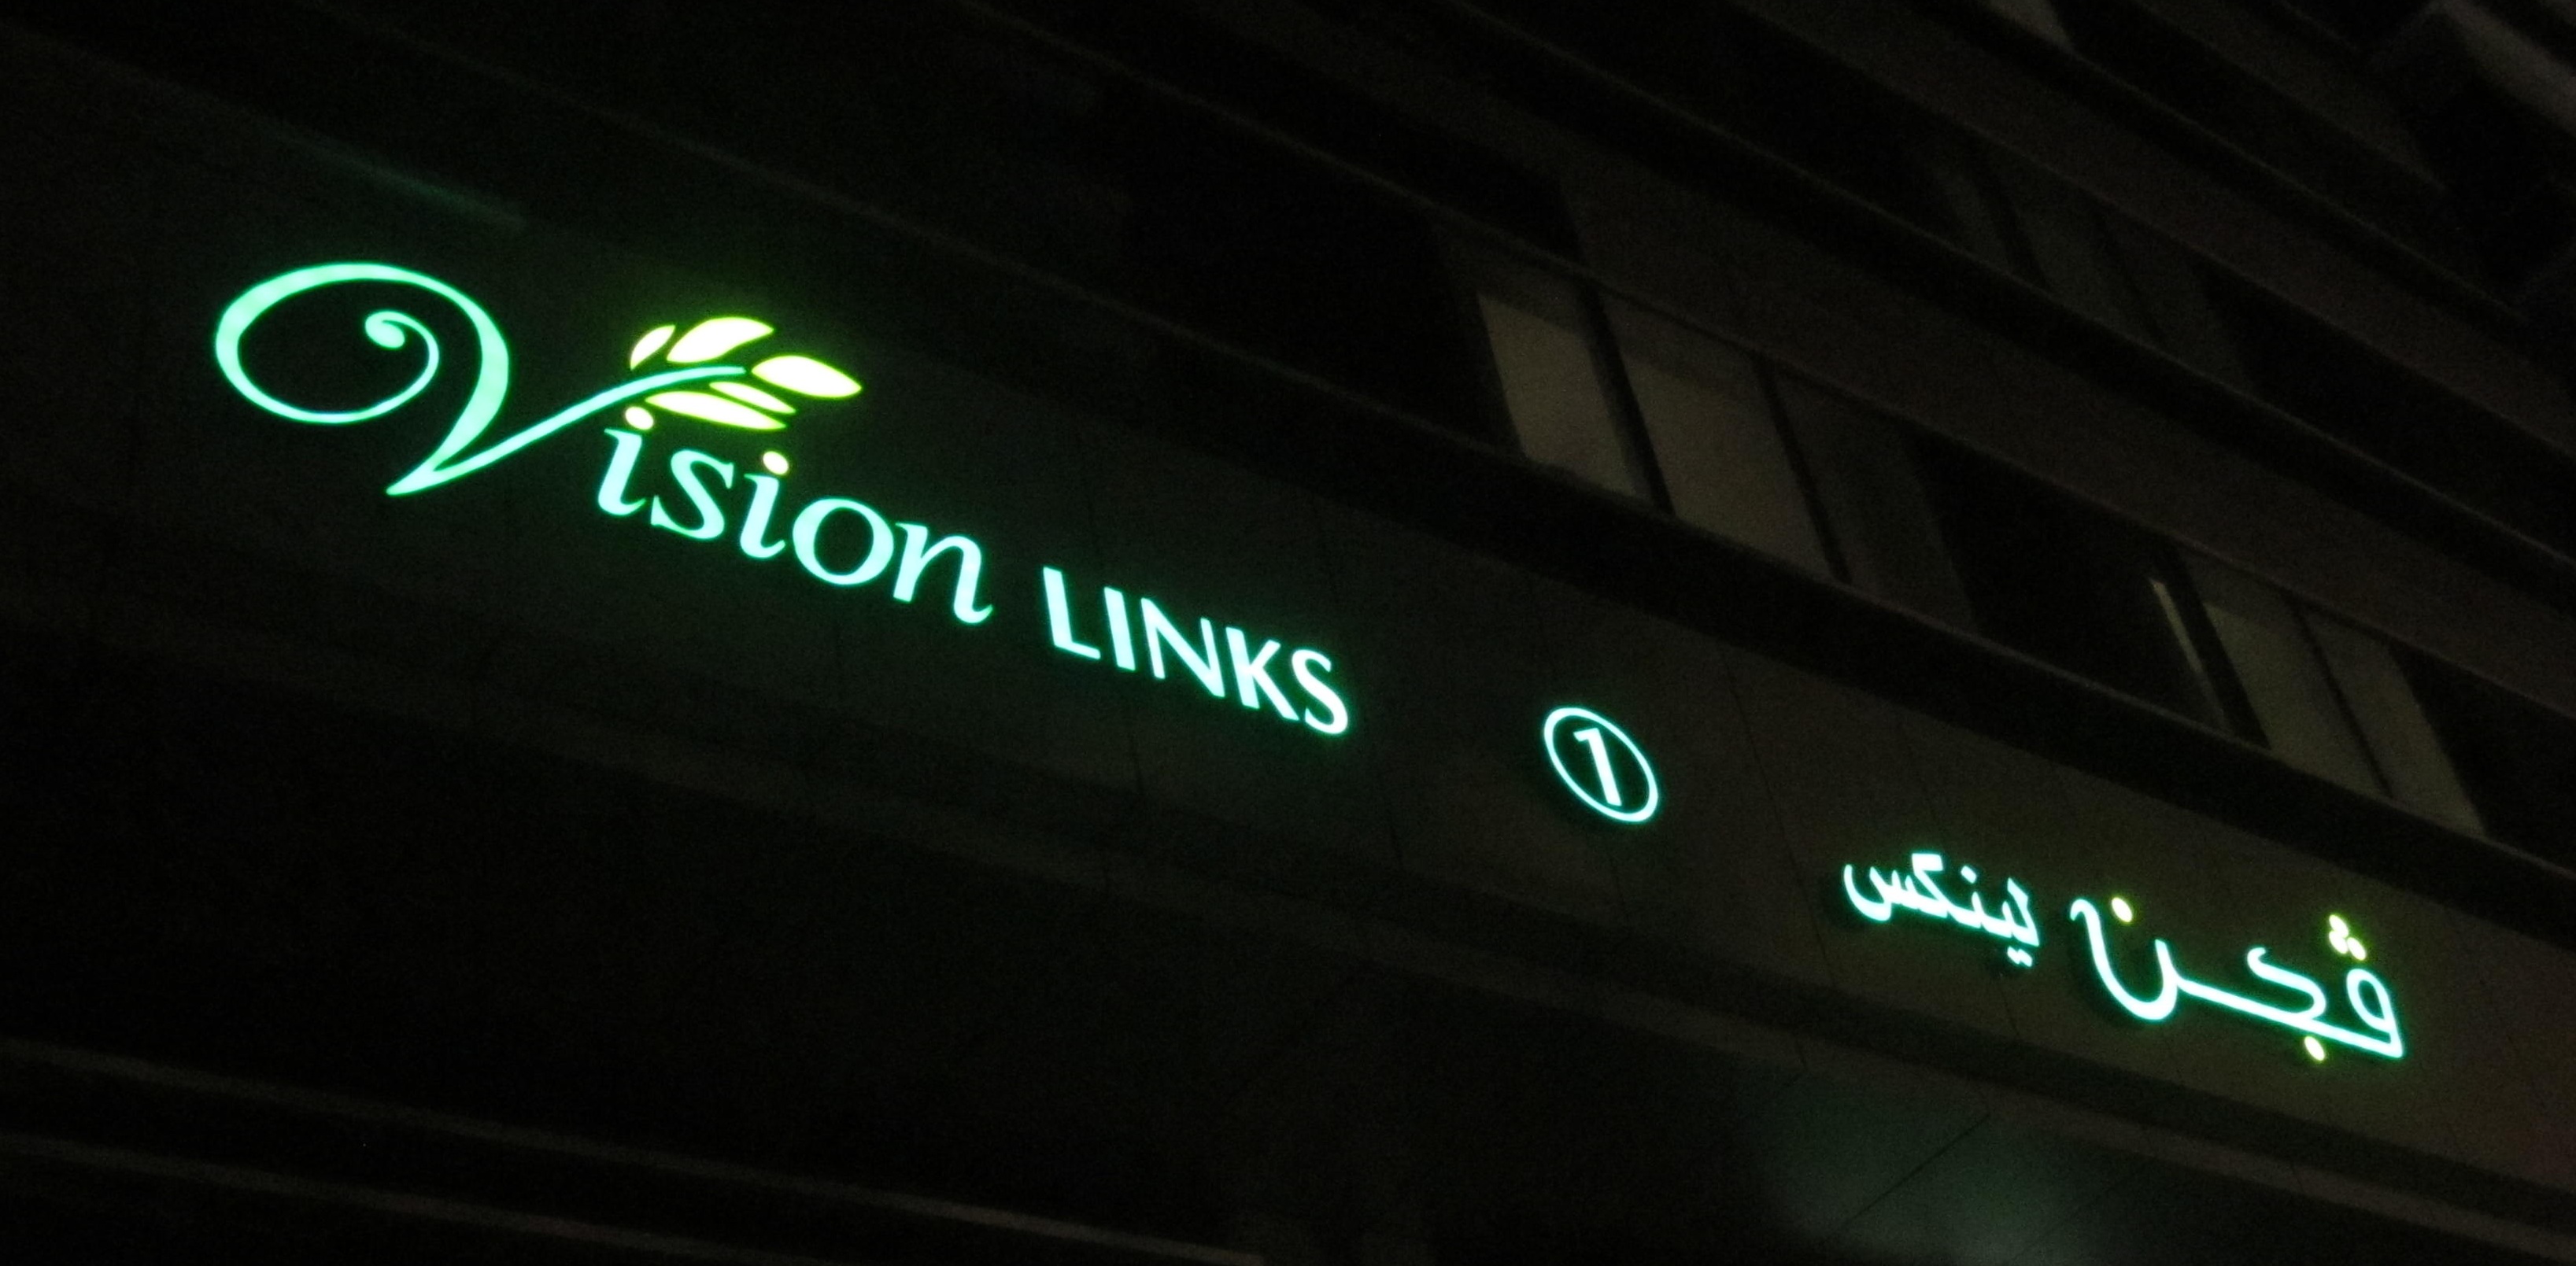 <h2>Vision Links - External Sign</h2><br/>